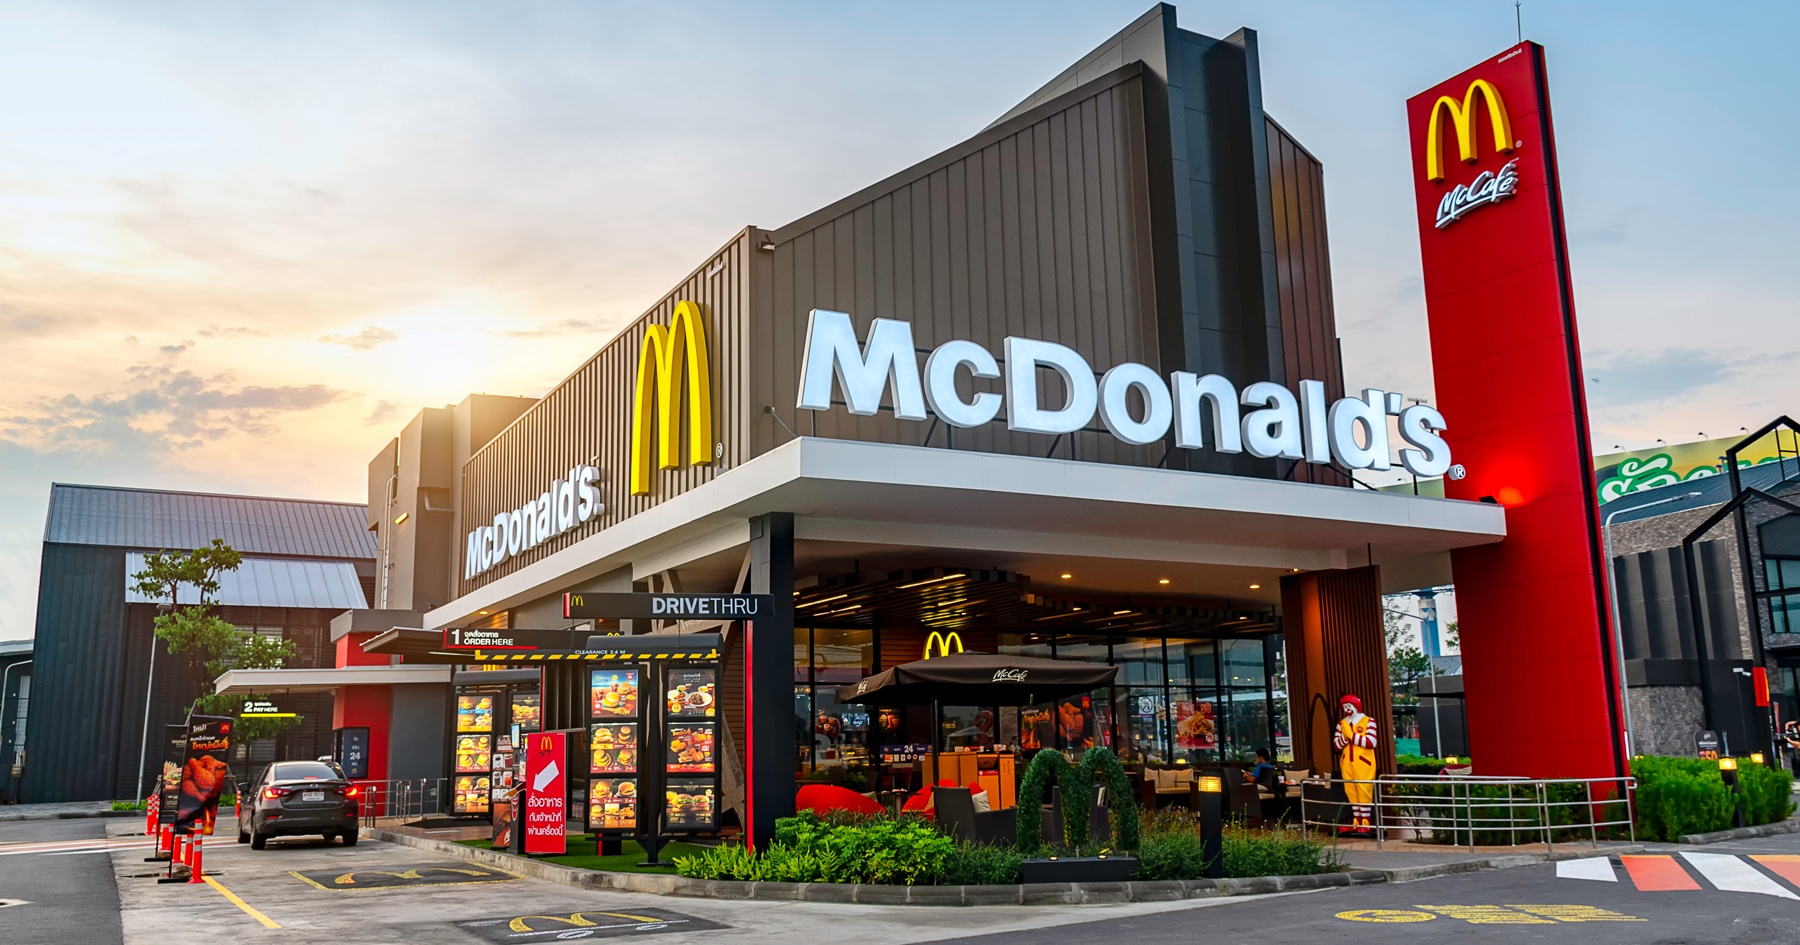 Les 10 restaurants McDonald's les plus insolites au monde